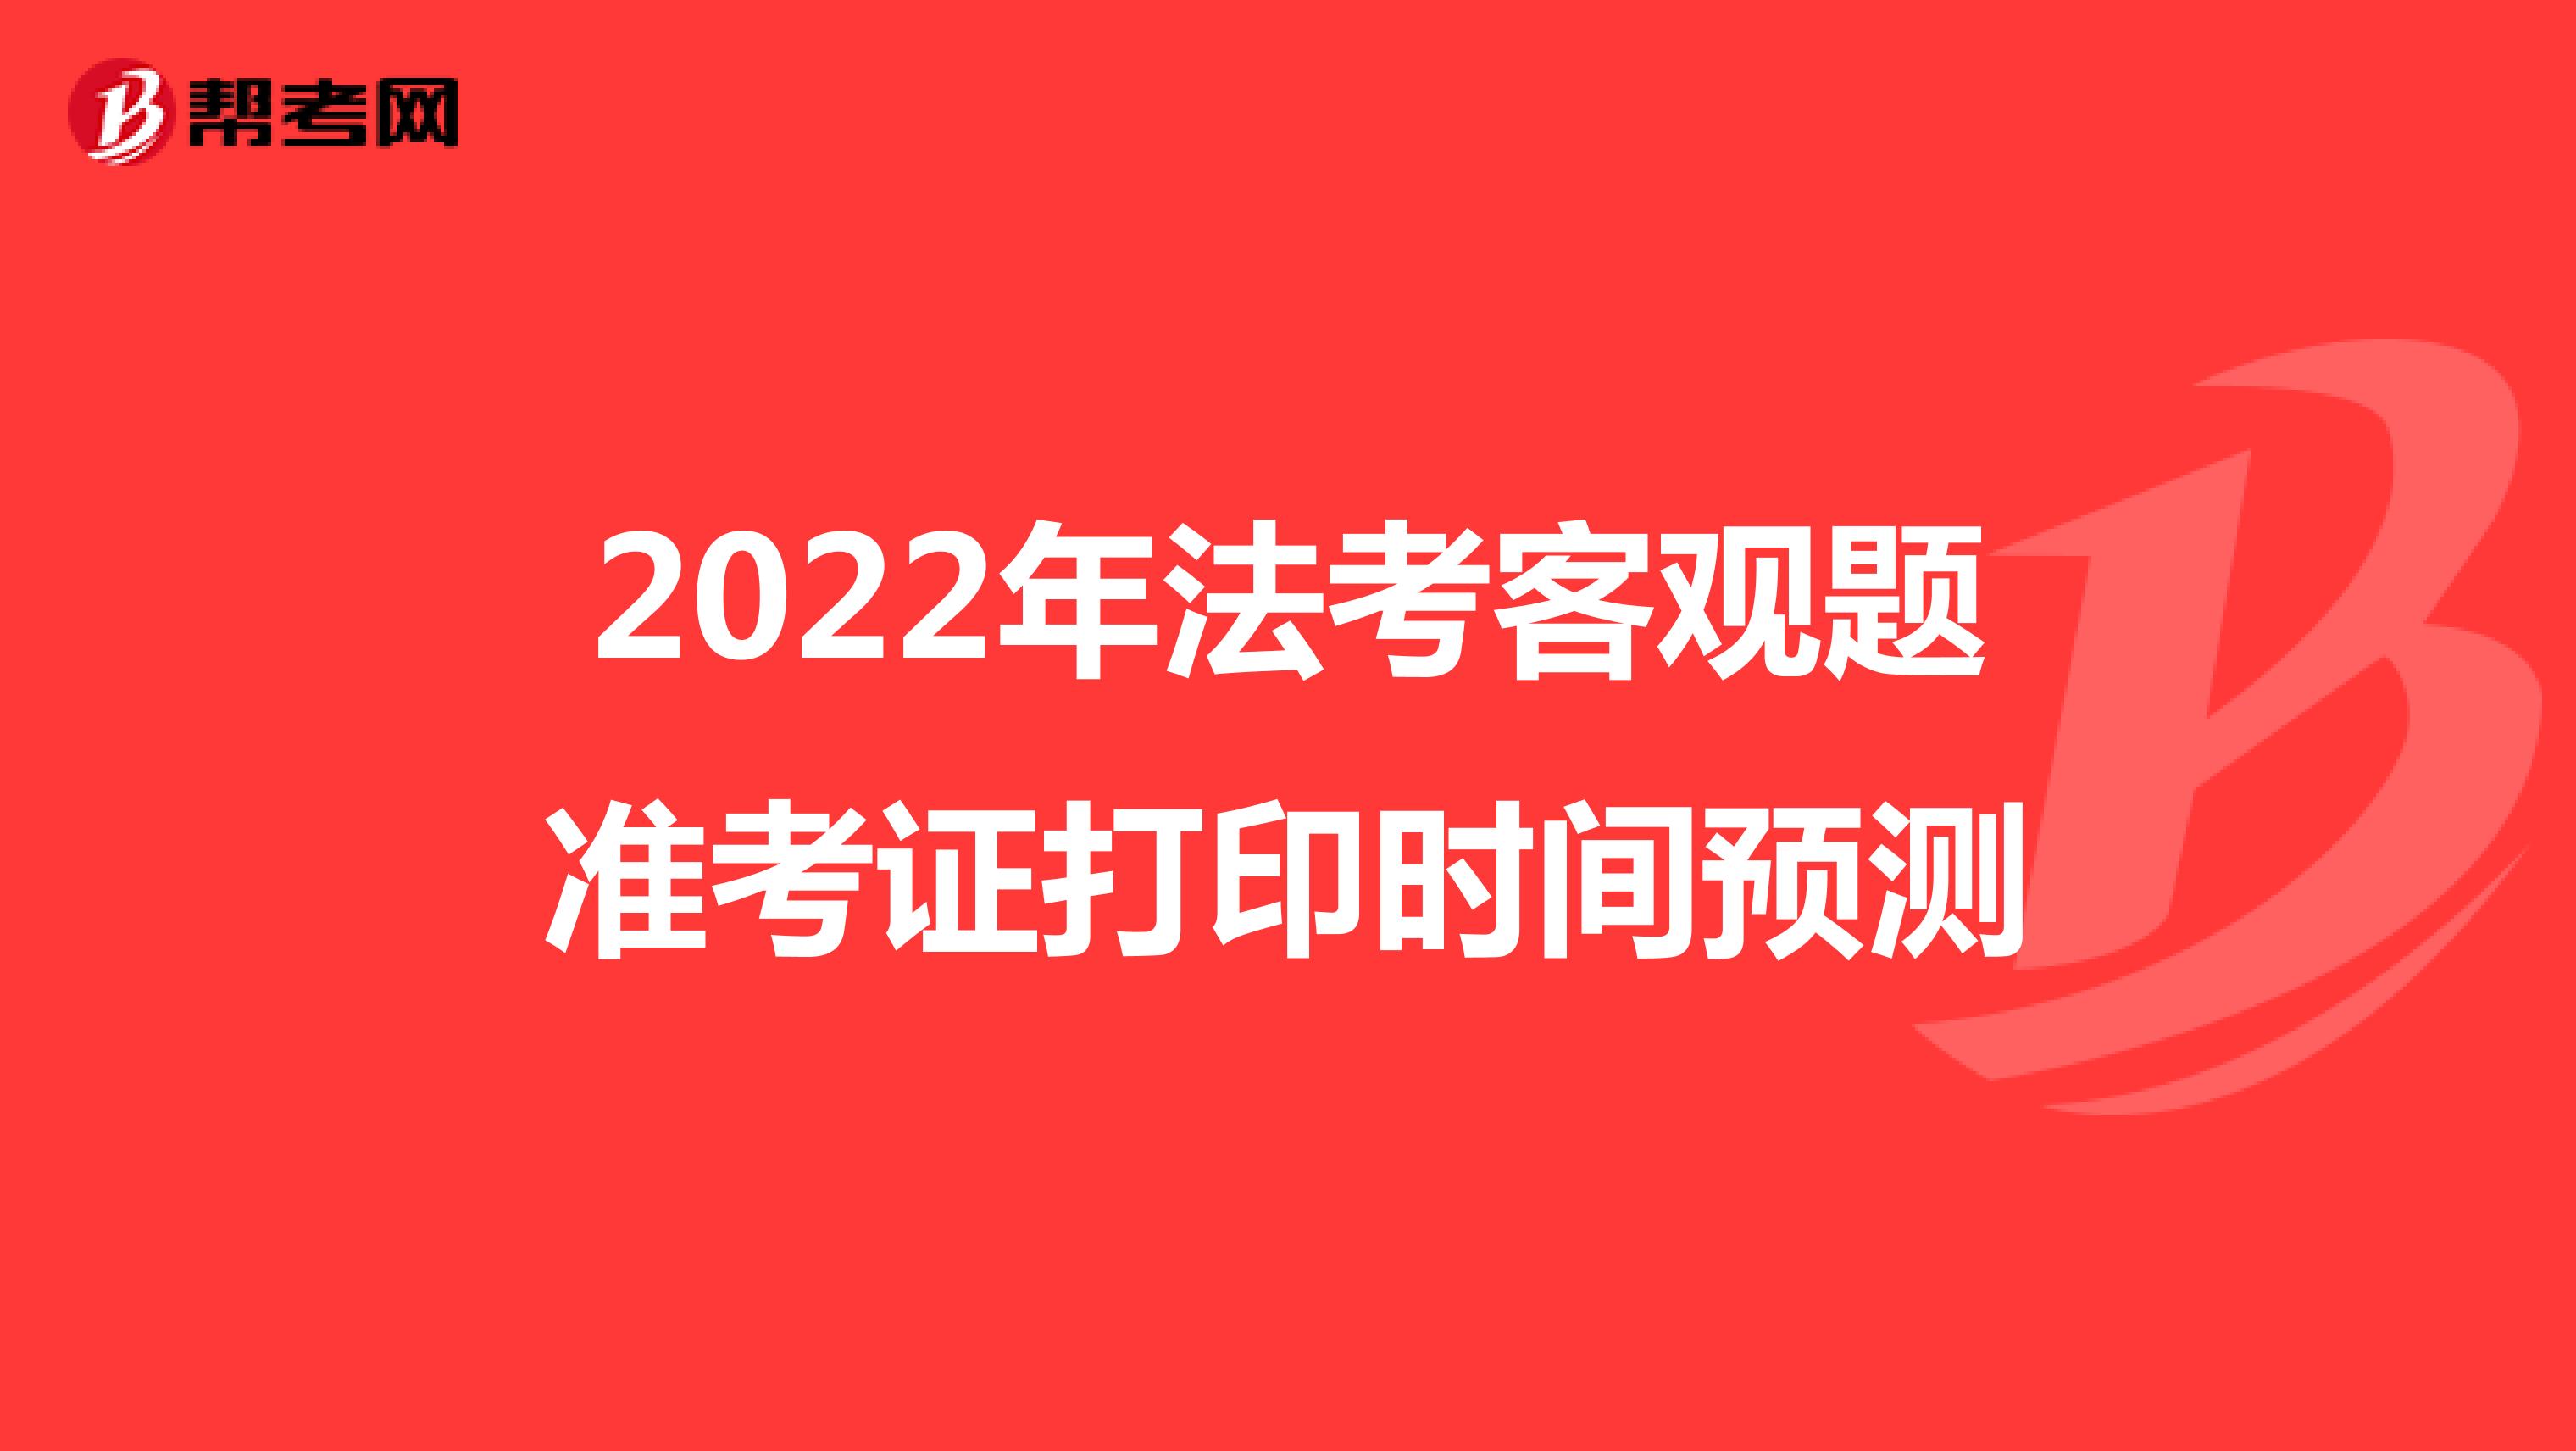 2022年法考客观题准考证打印时间预测